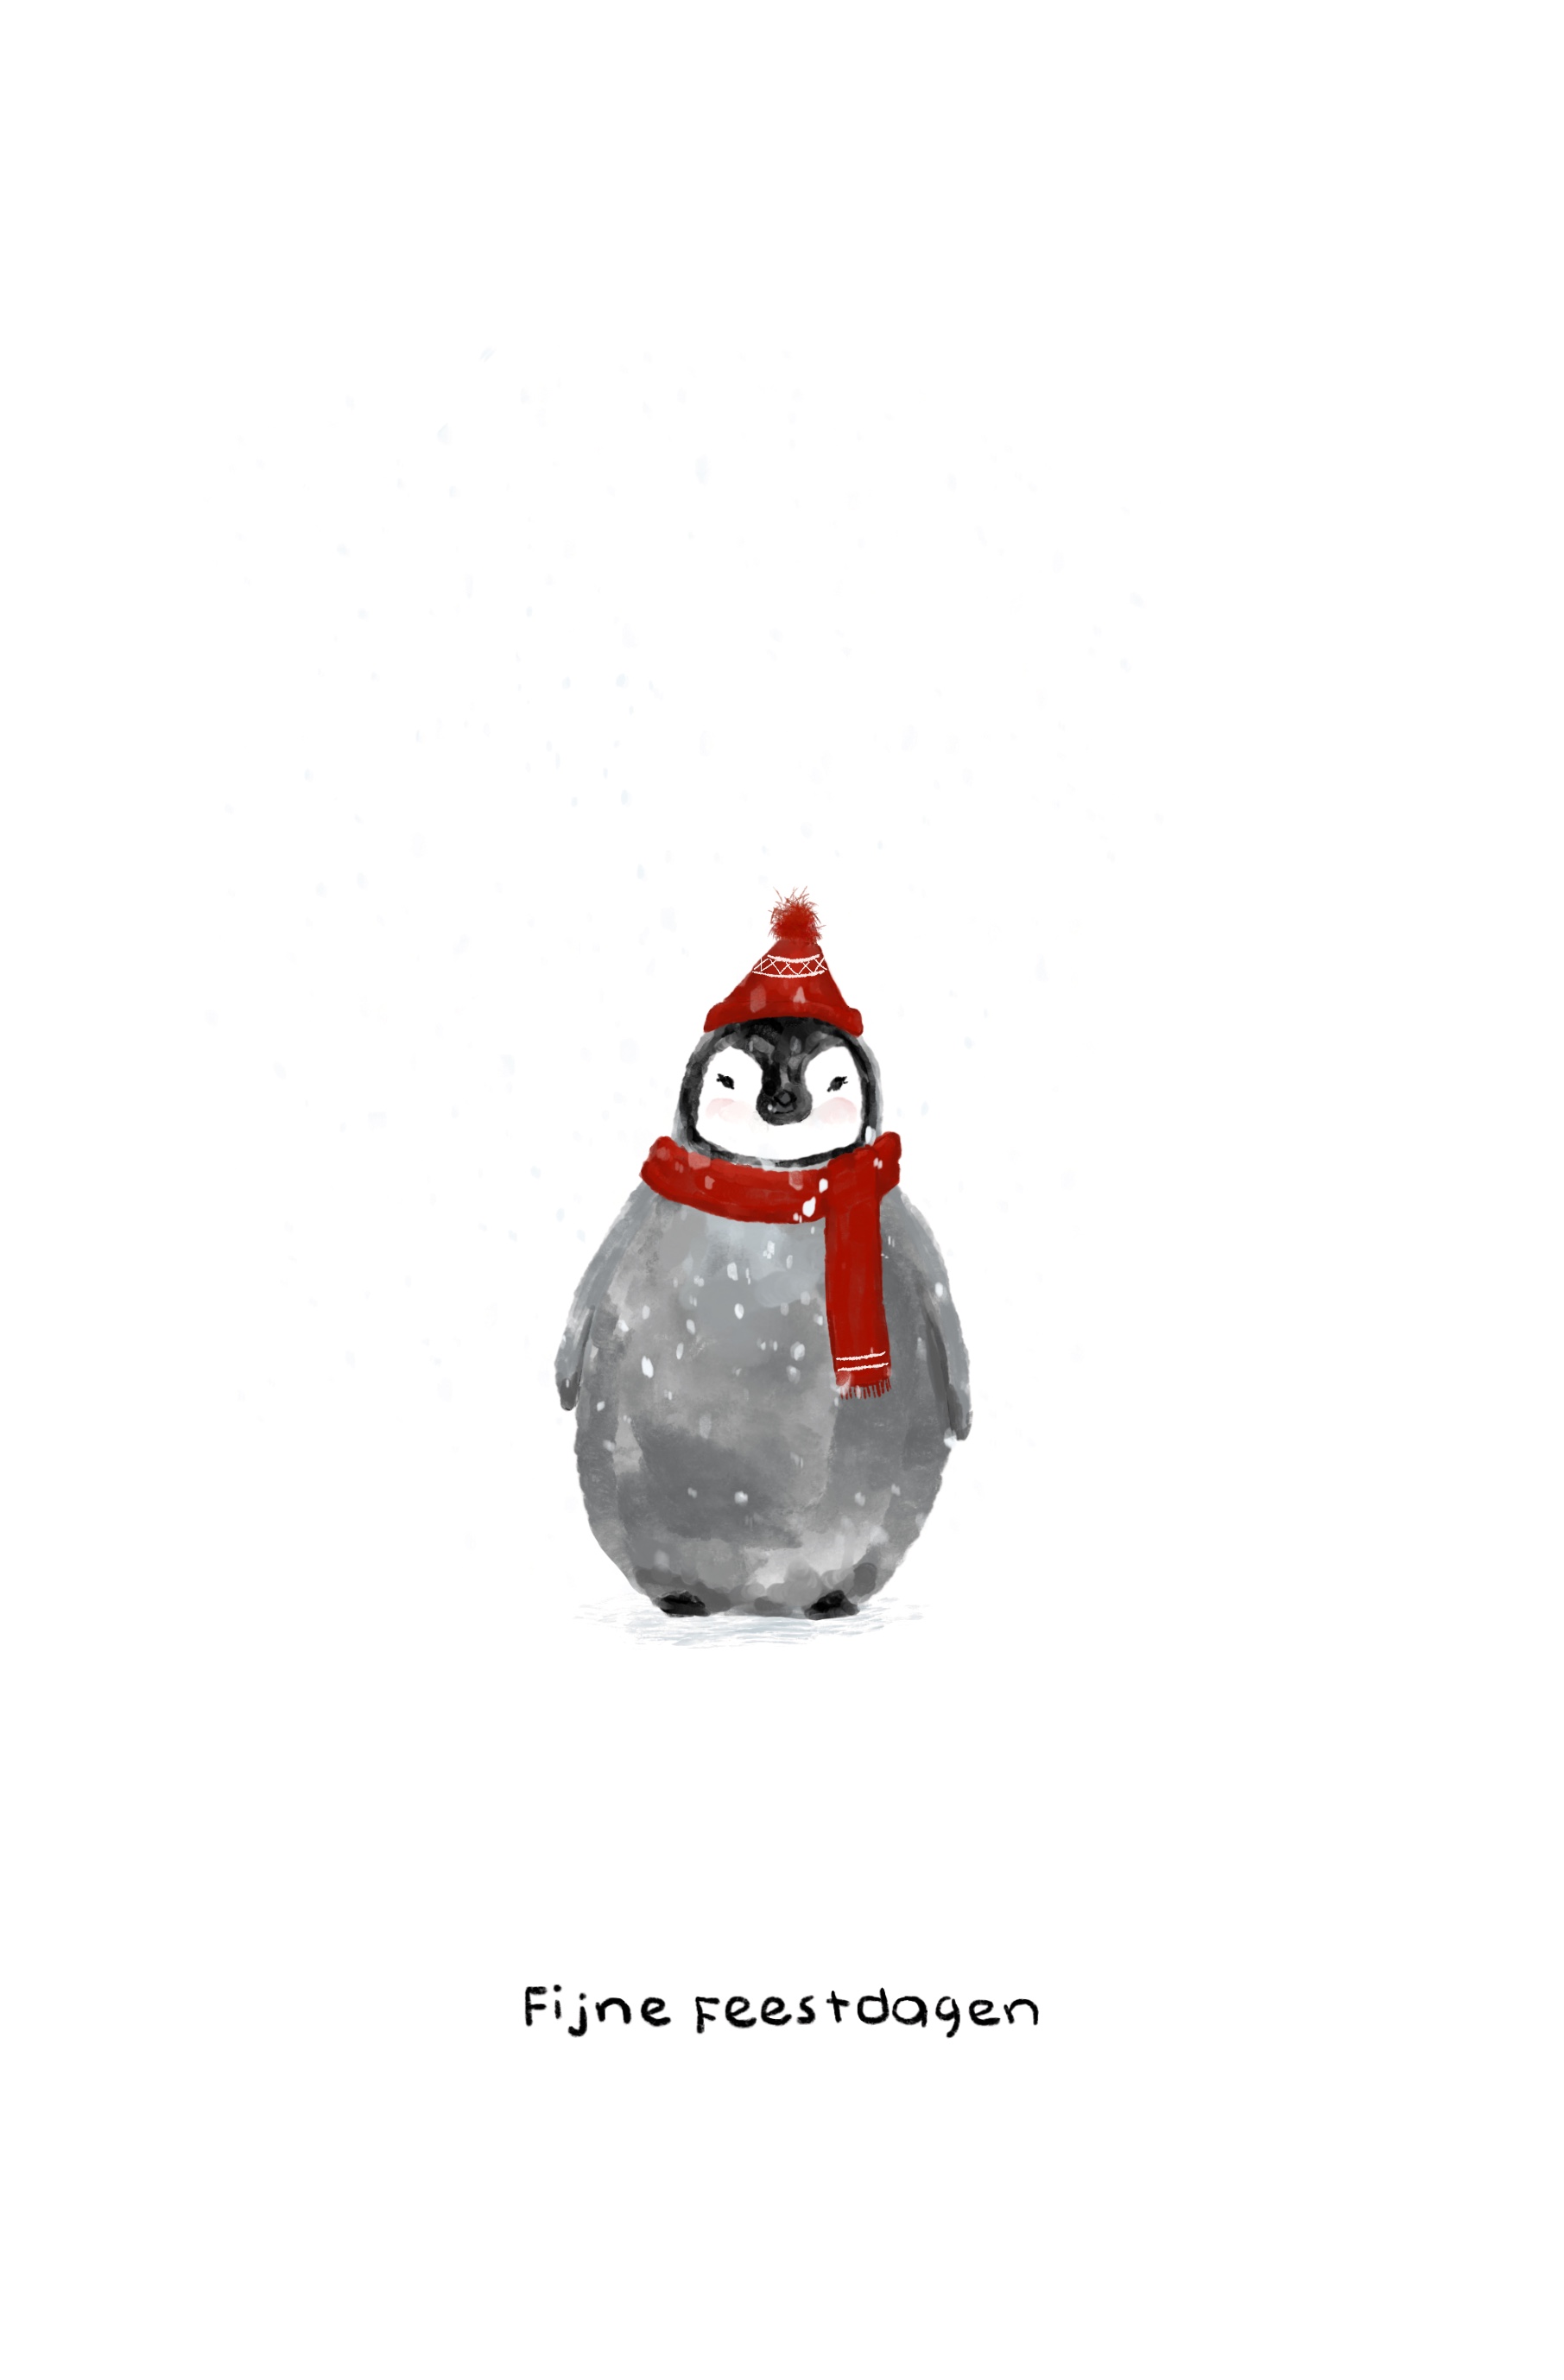 Wenskaart pinguin winter